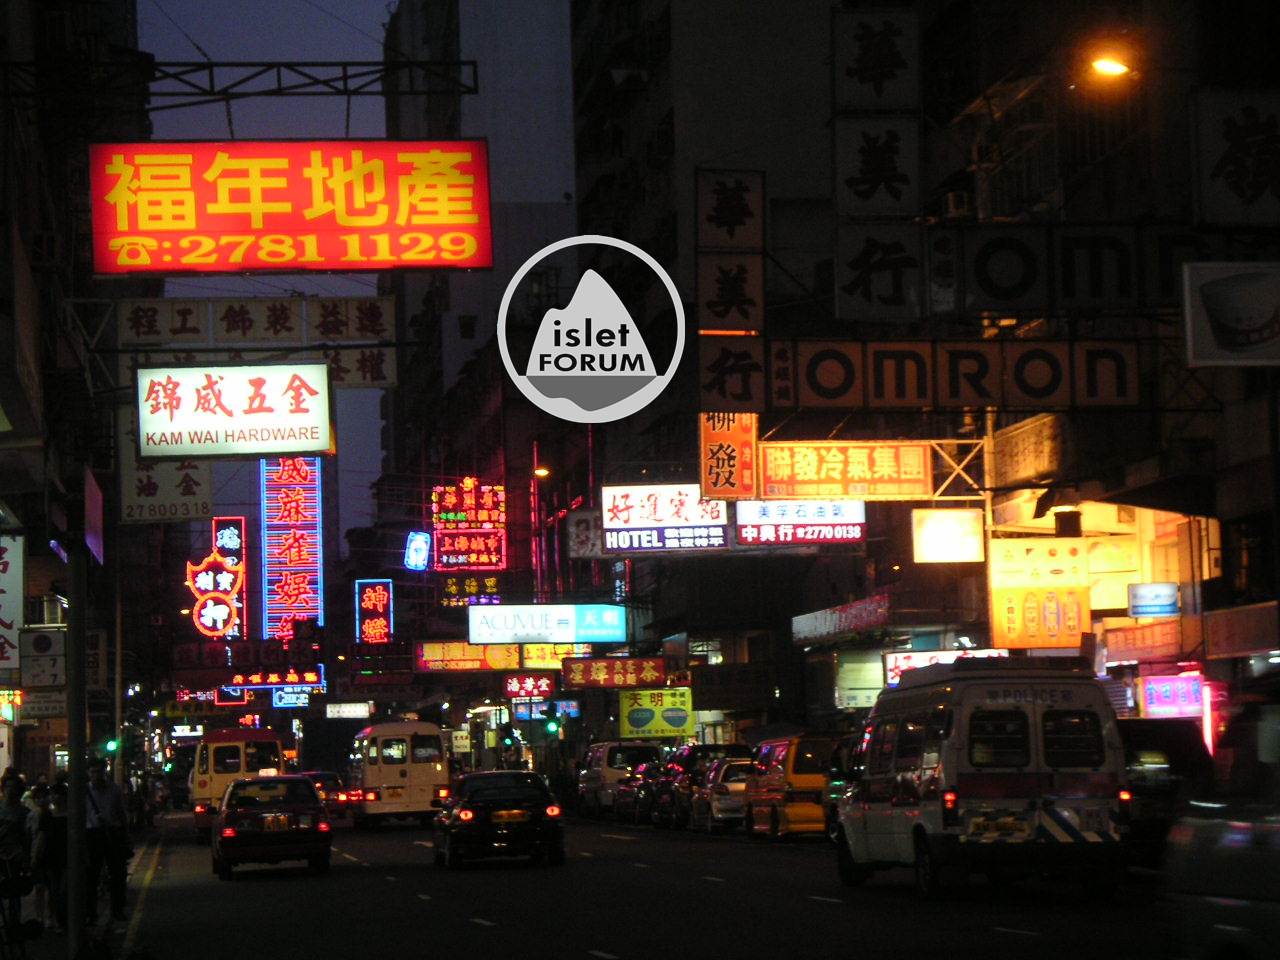 上海街 shanghai street (5).jpg